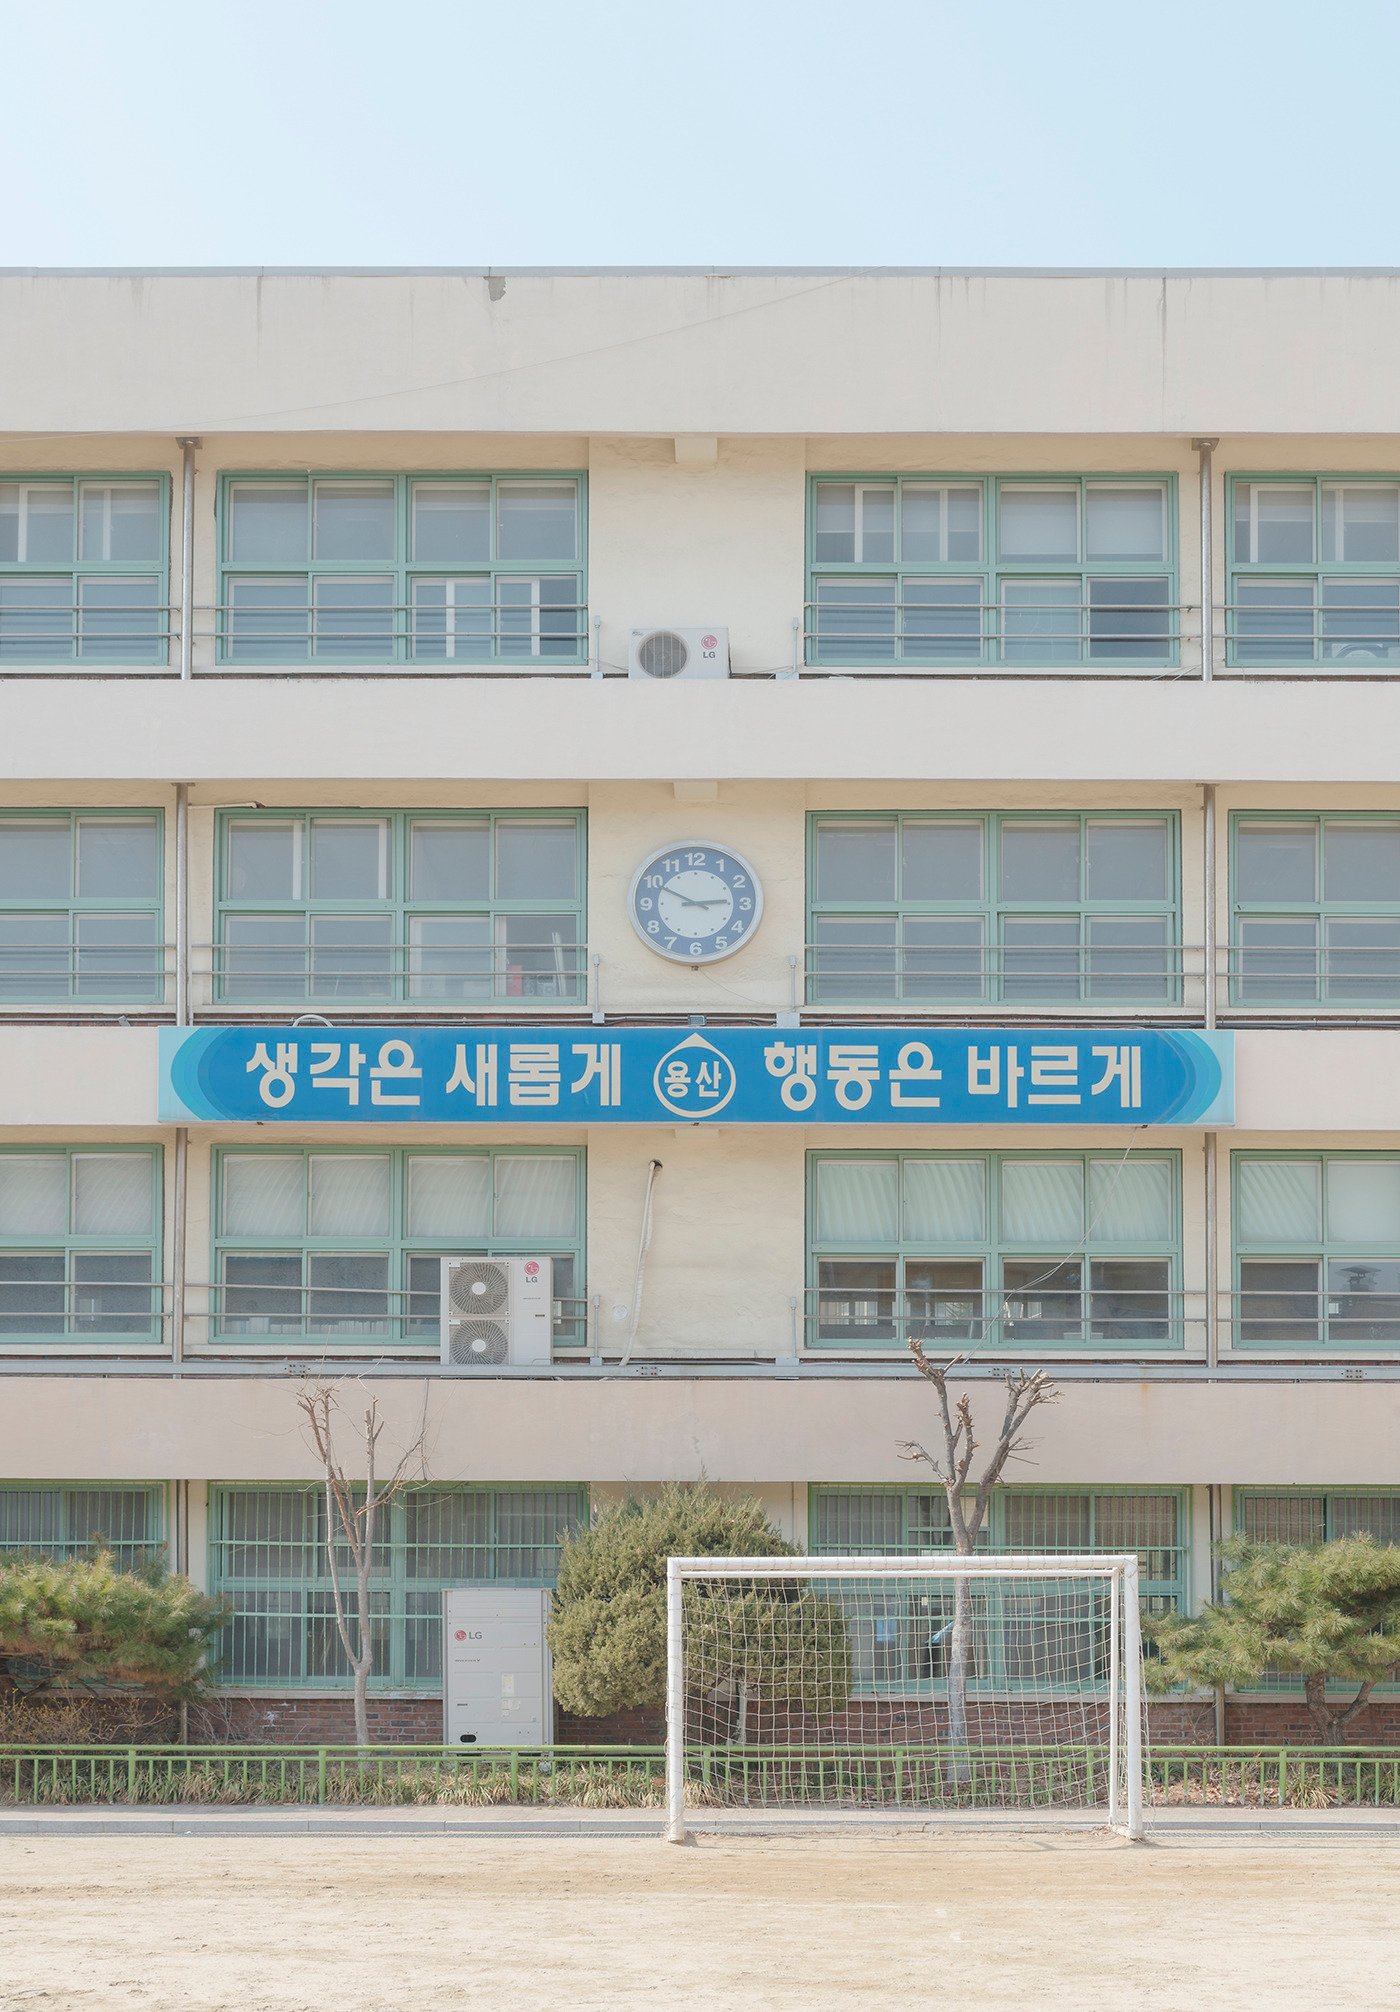 south korean school building